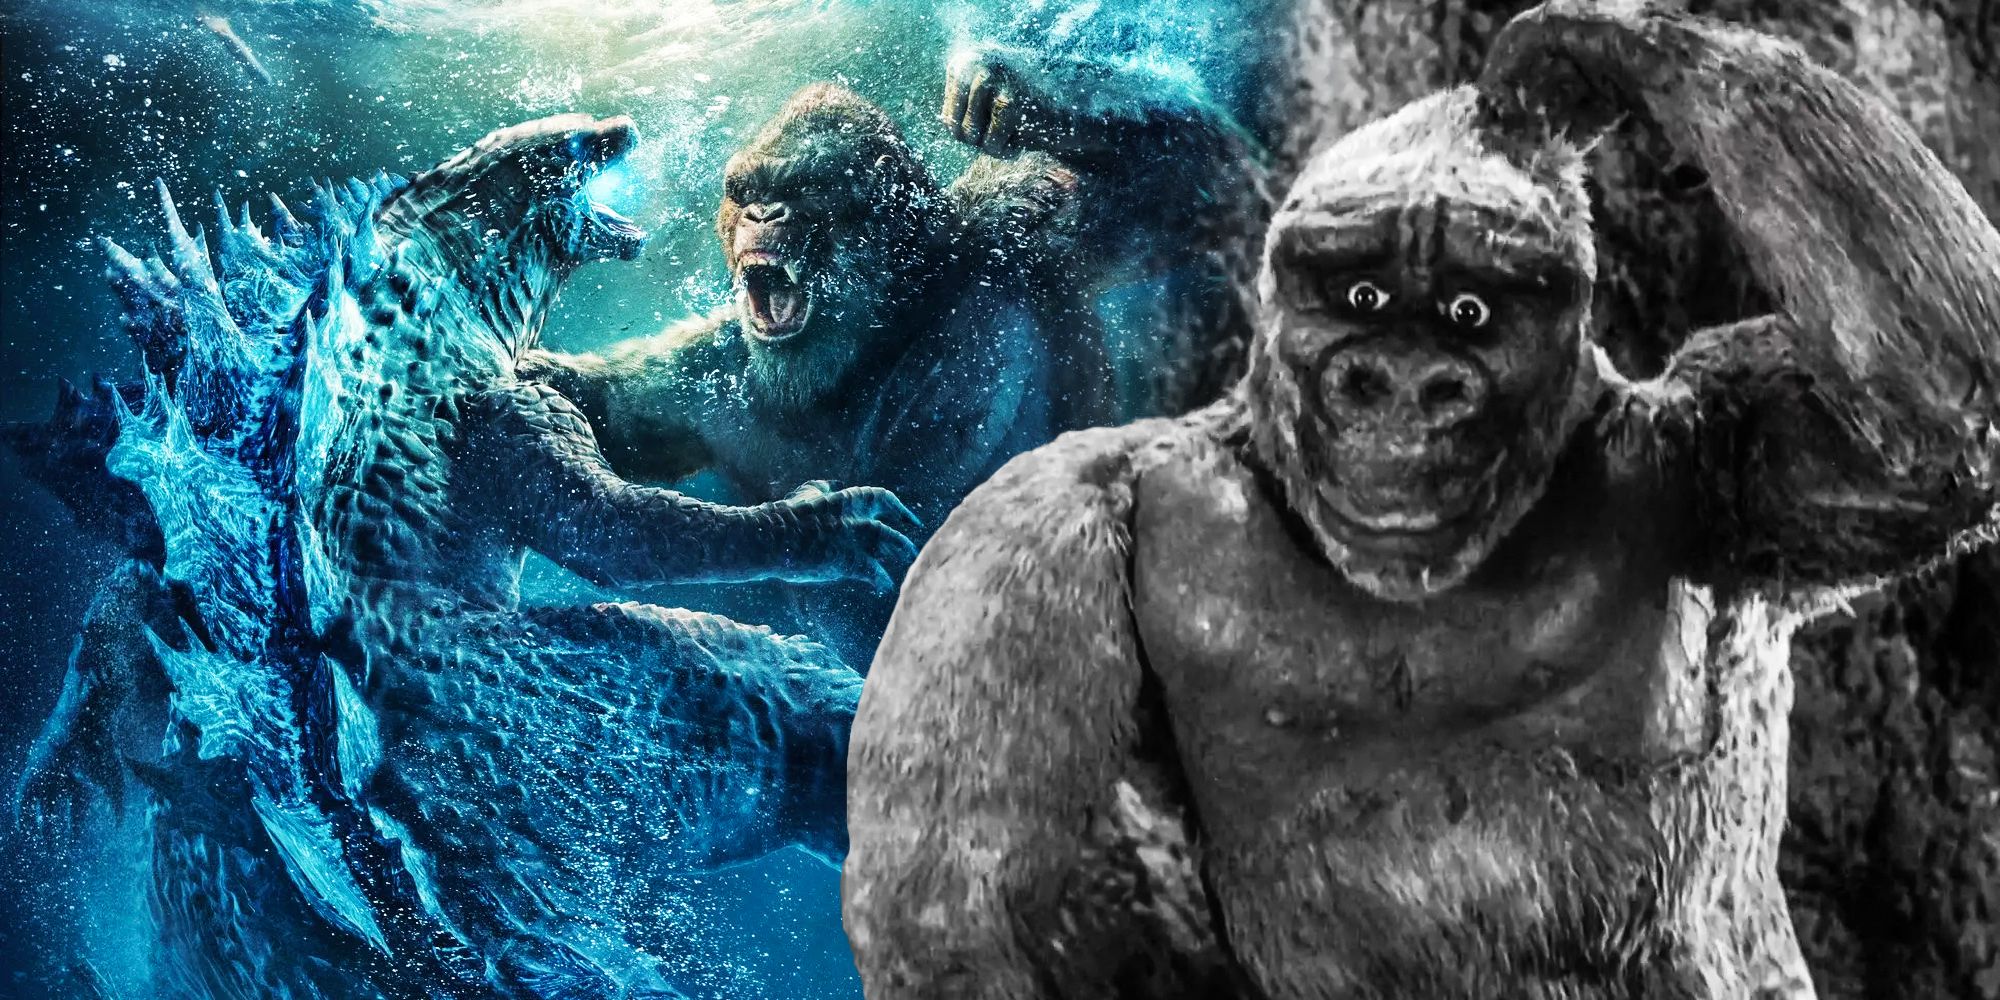 Godzilla vs kong sequel rumors son of kong